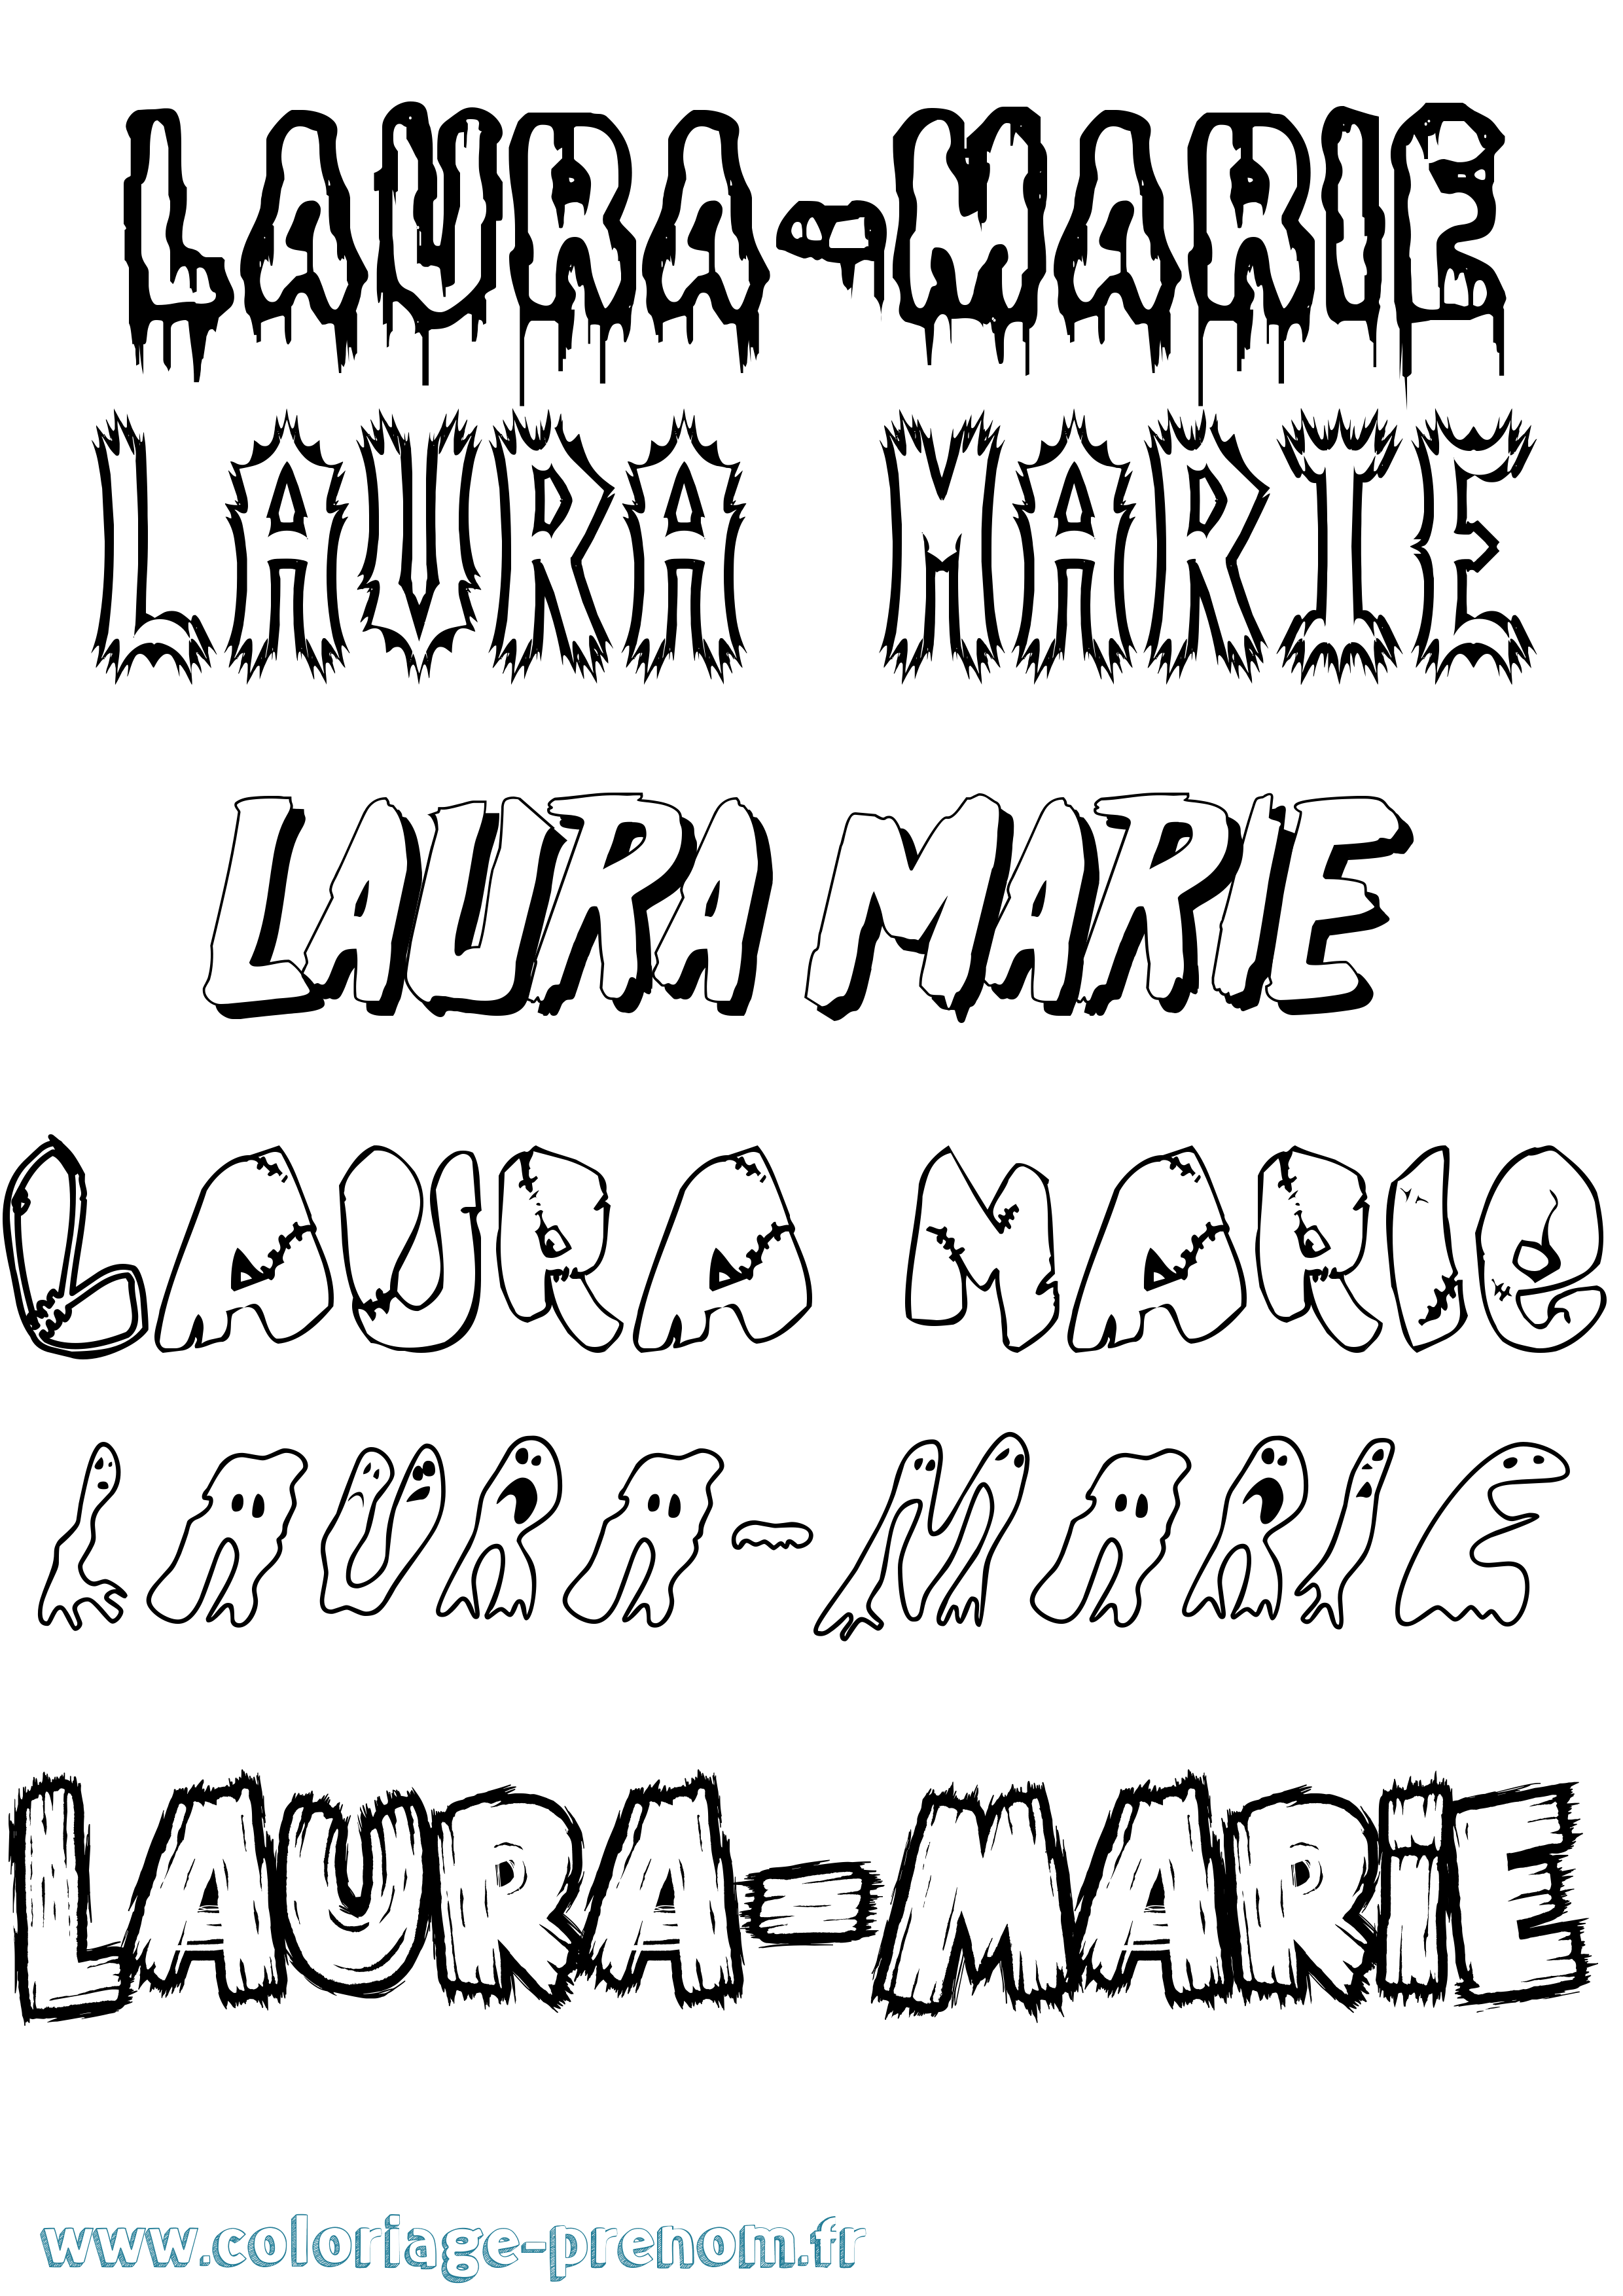 Coloriage prénom Laura-Marie Frisson